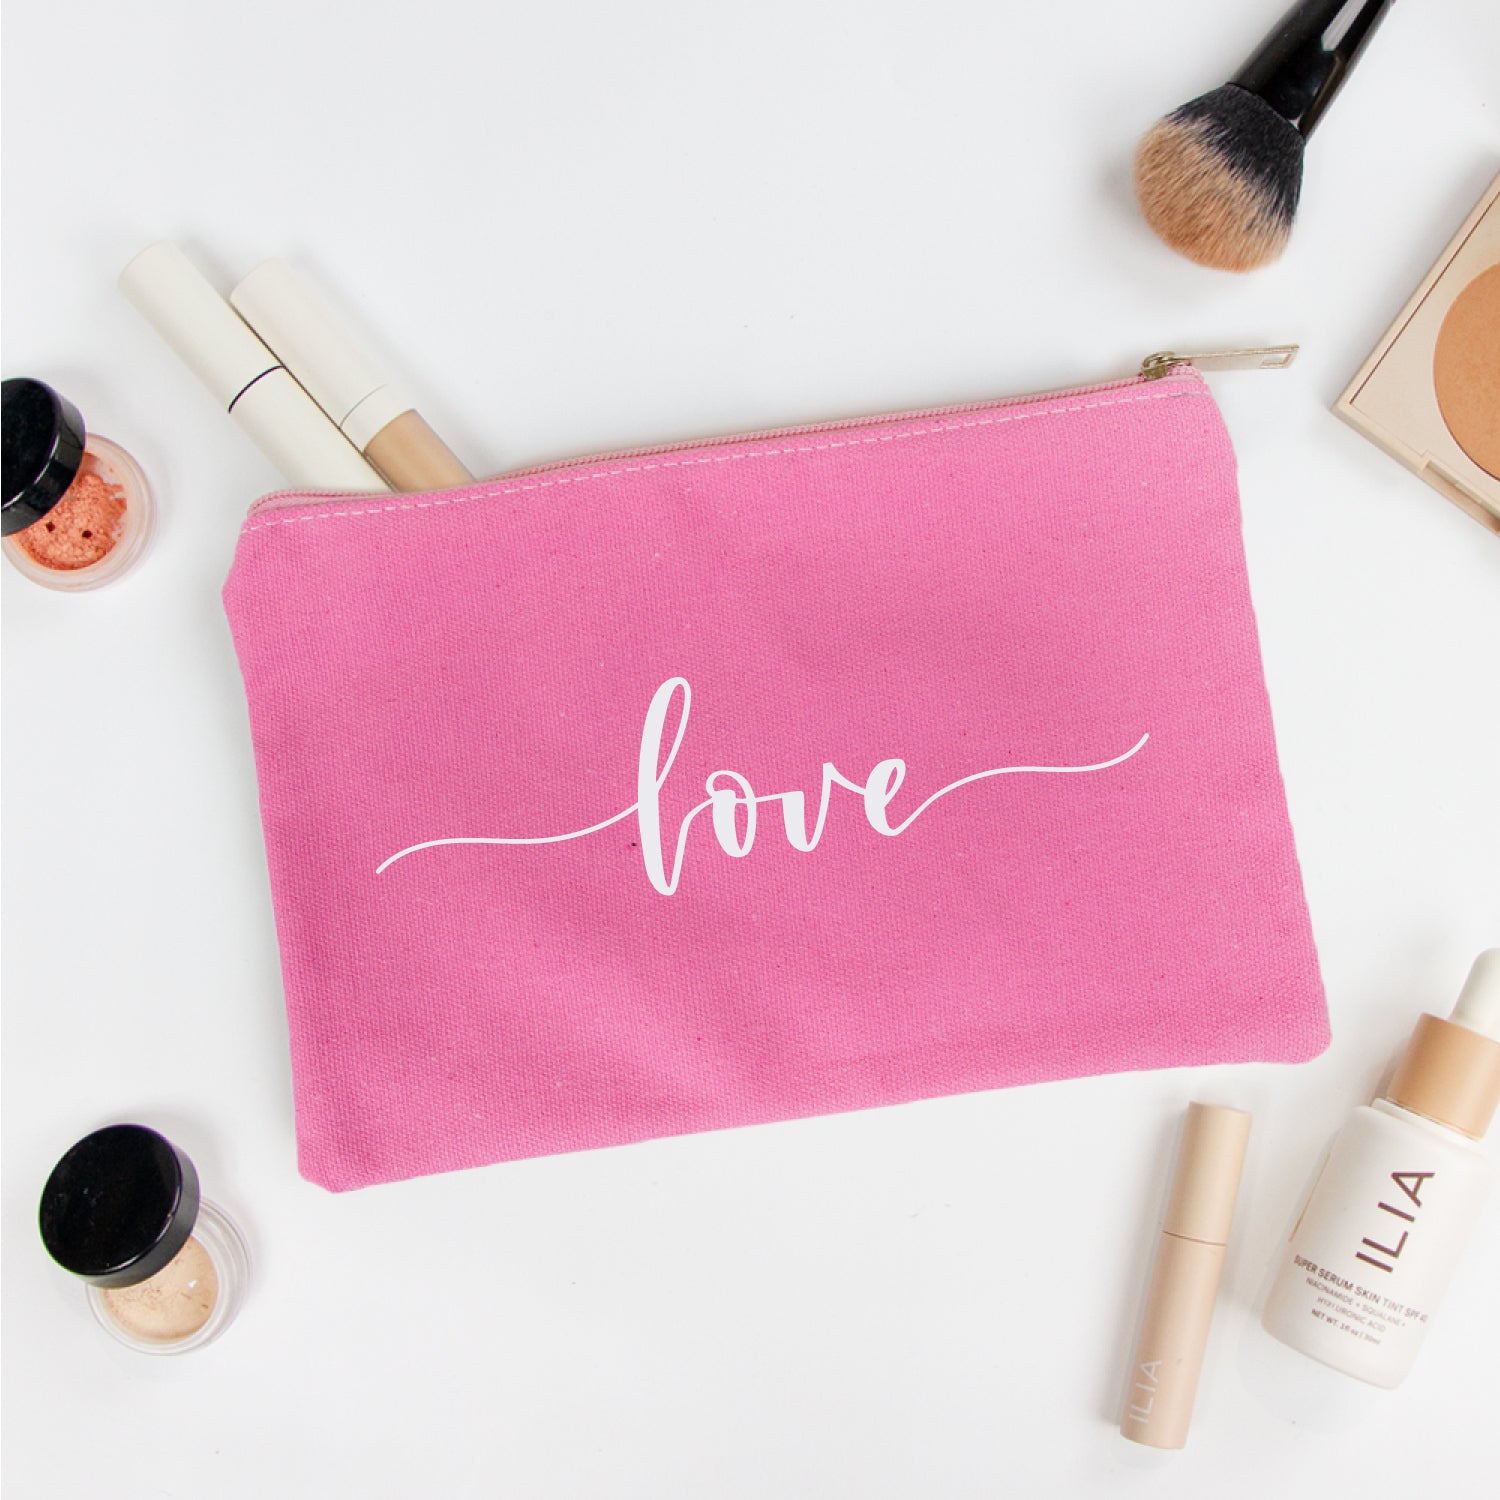 Cute Love Makeup Bag